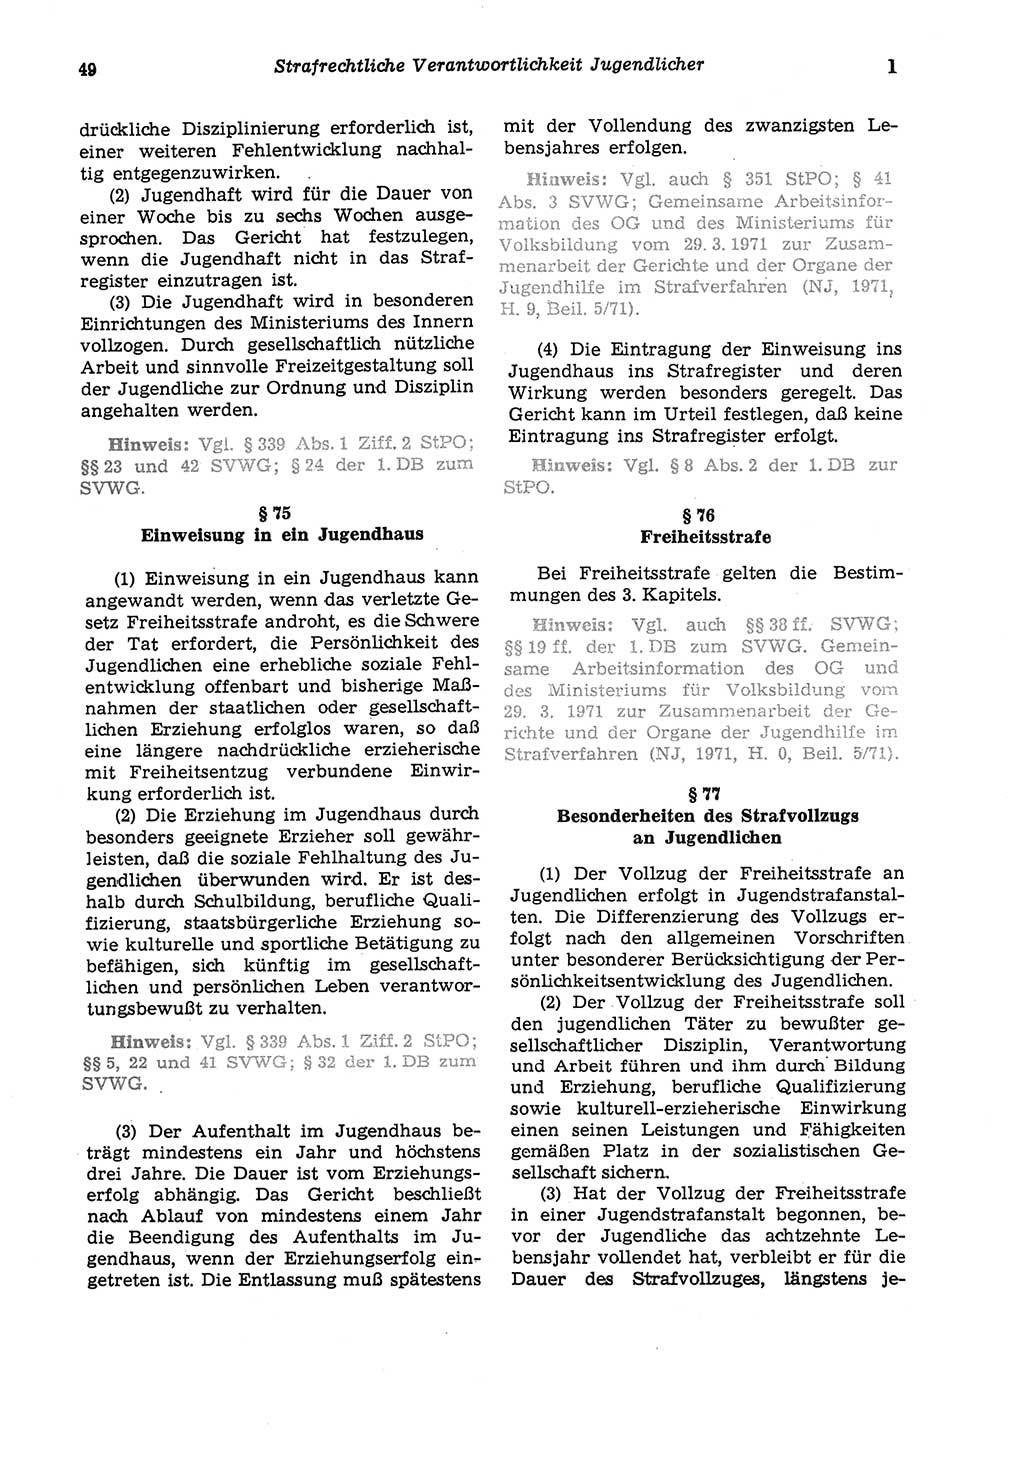 Strafgesetzbuch (StGB) der Deutschen Demokratischen Republik (DDR) und angrenzende Gesetze und Bestimmungen 1975, Seite 49 (StGB DDR Ges. Best. 1975, S. 49)